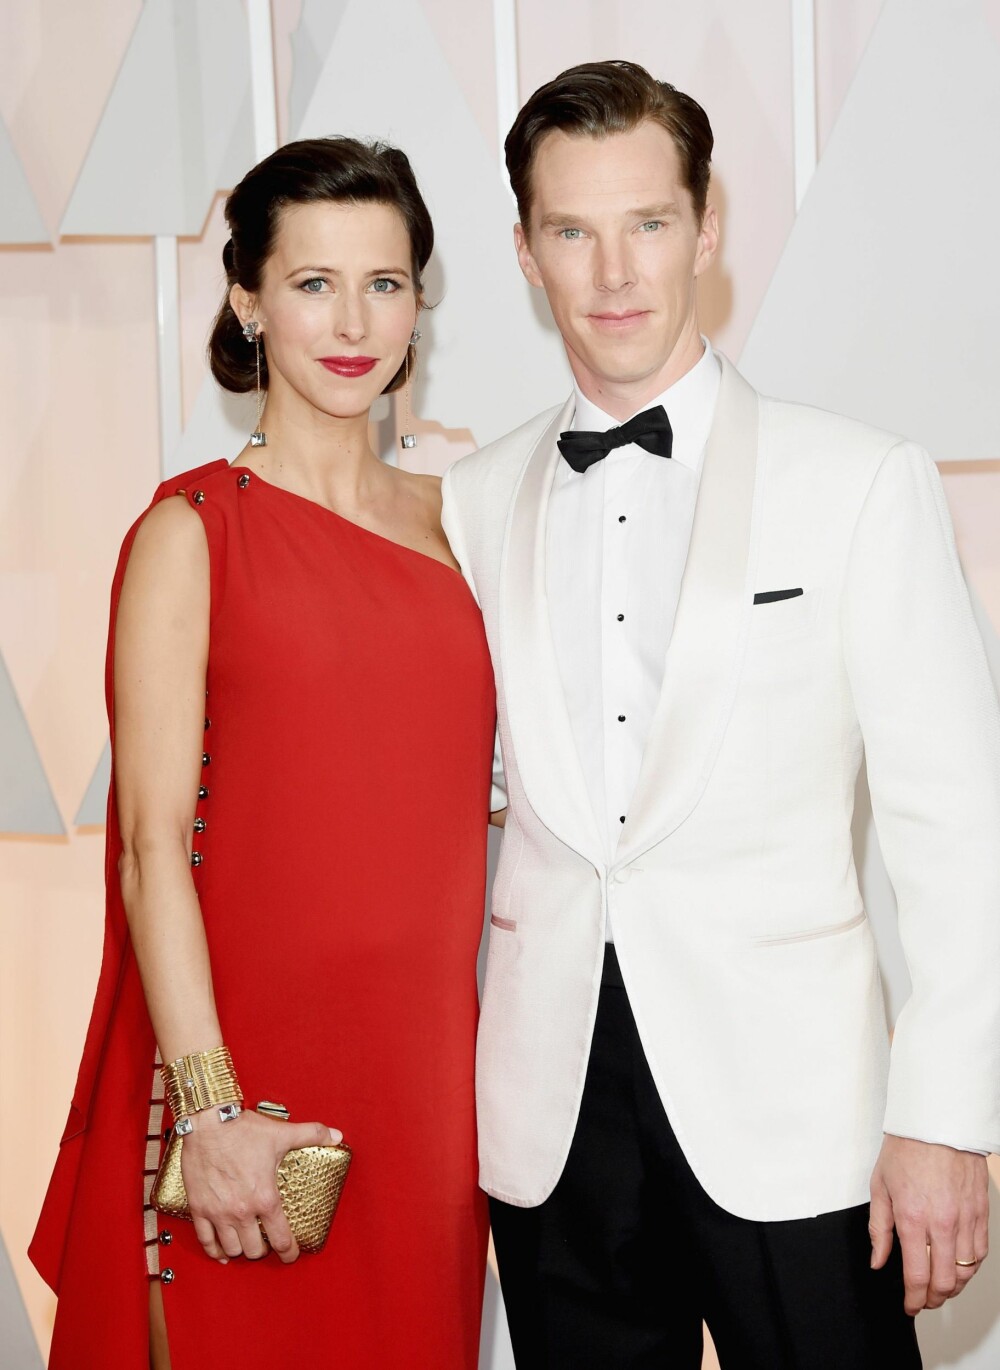 Det ble altså ingen pris for beste skuespiller til Benedict Cumberbatch, her sammen med Sophie Hunter. Cumberbatch gikk for hvit smoking.